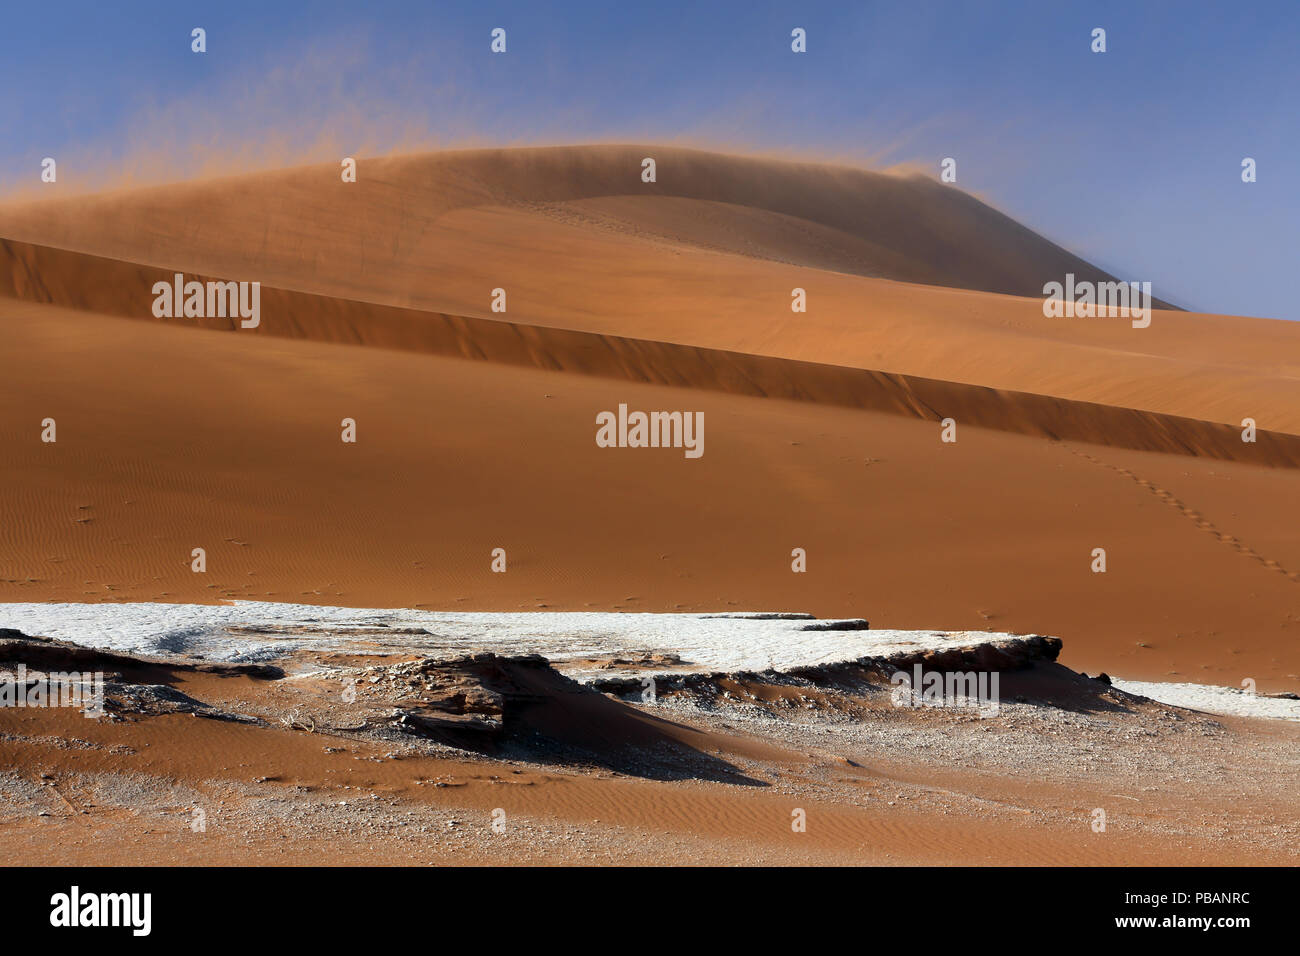 Big Daddy, a 325m de la duna de arena más alta del mundo, el desierto de Namib, en Namibia. Foto de stock